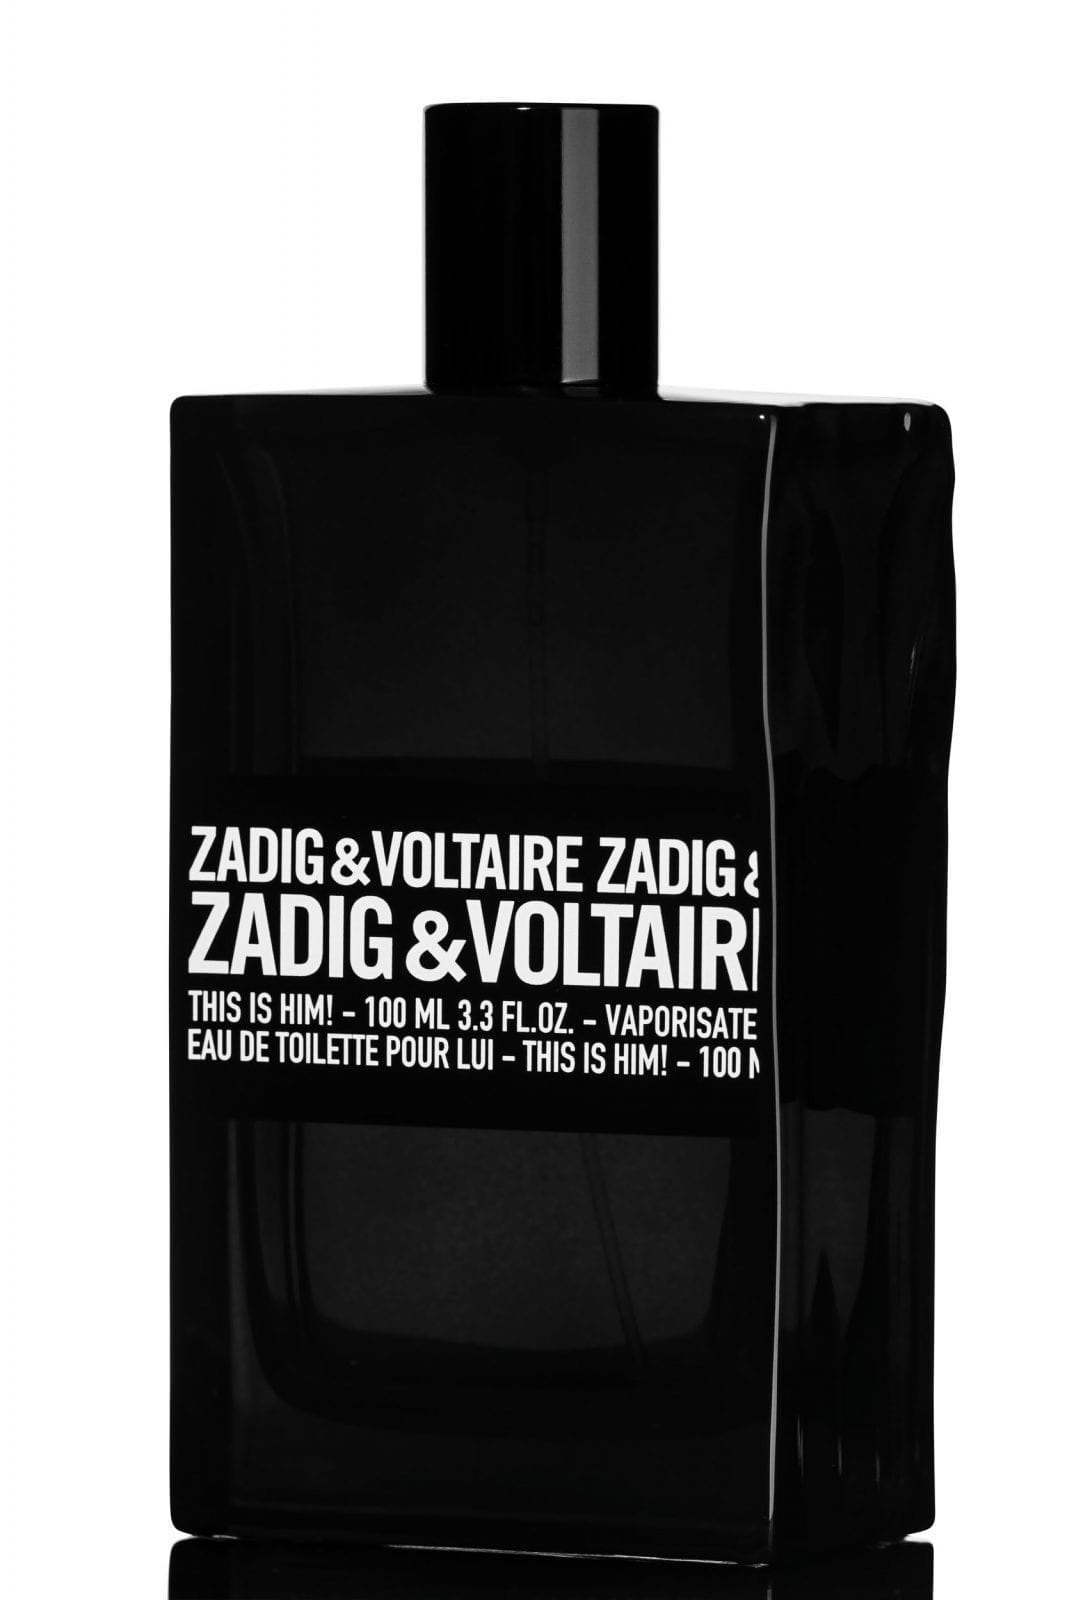 Zadig & Voltaire - Aurel Serban